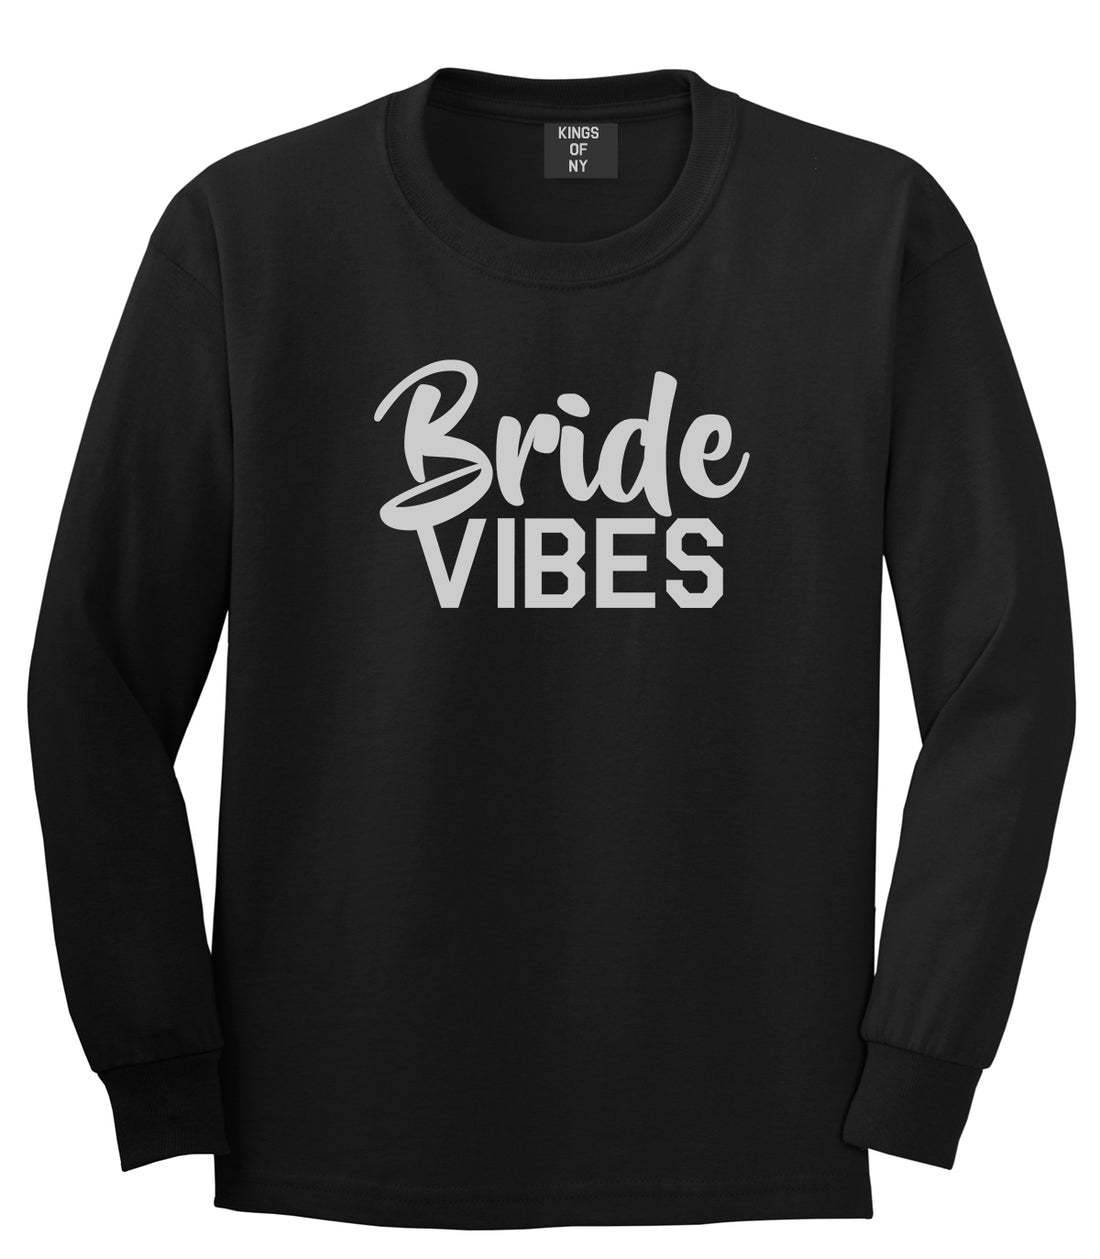 Bride Vibes Bridal Mens Black Long Sleeve T-Shirt by KINGS OF NY